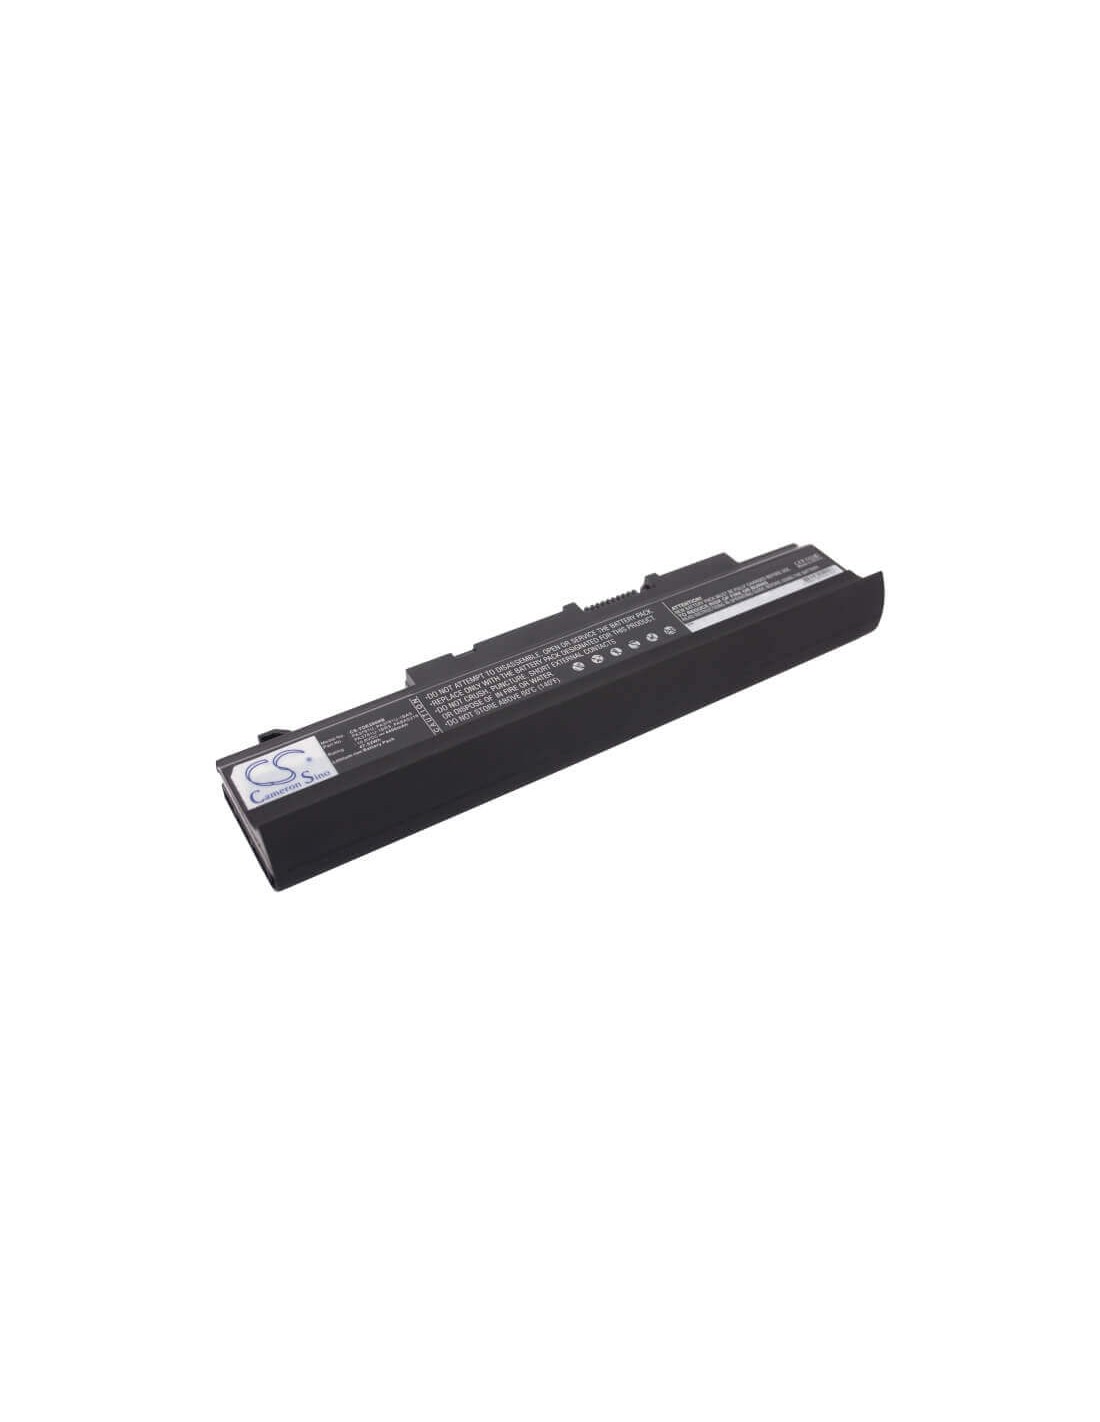 Black Battery for Toshiba Satellite E200, Satellite E200-002, Satellite E200-006 10.8V, 4400mAh - 47.52Wh